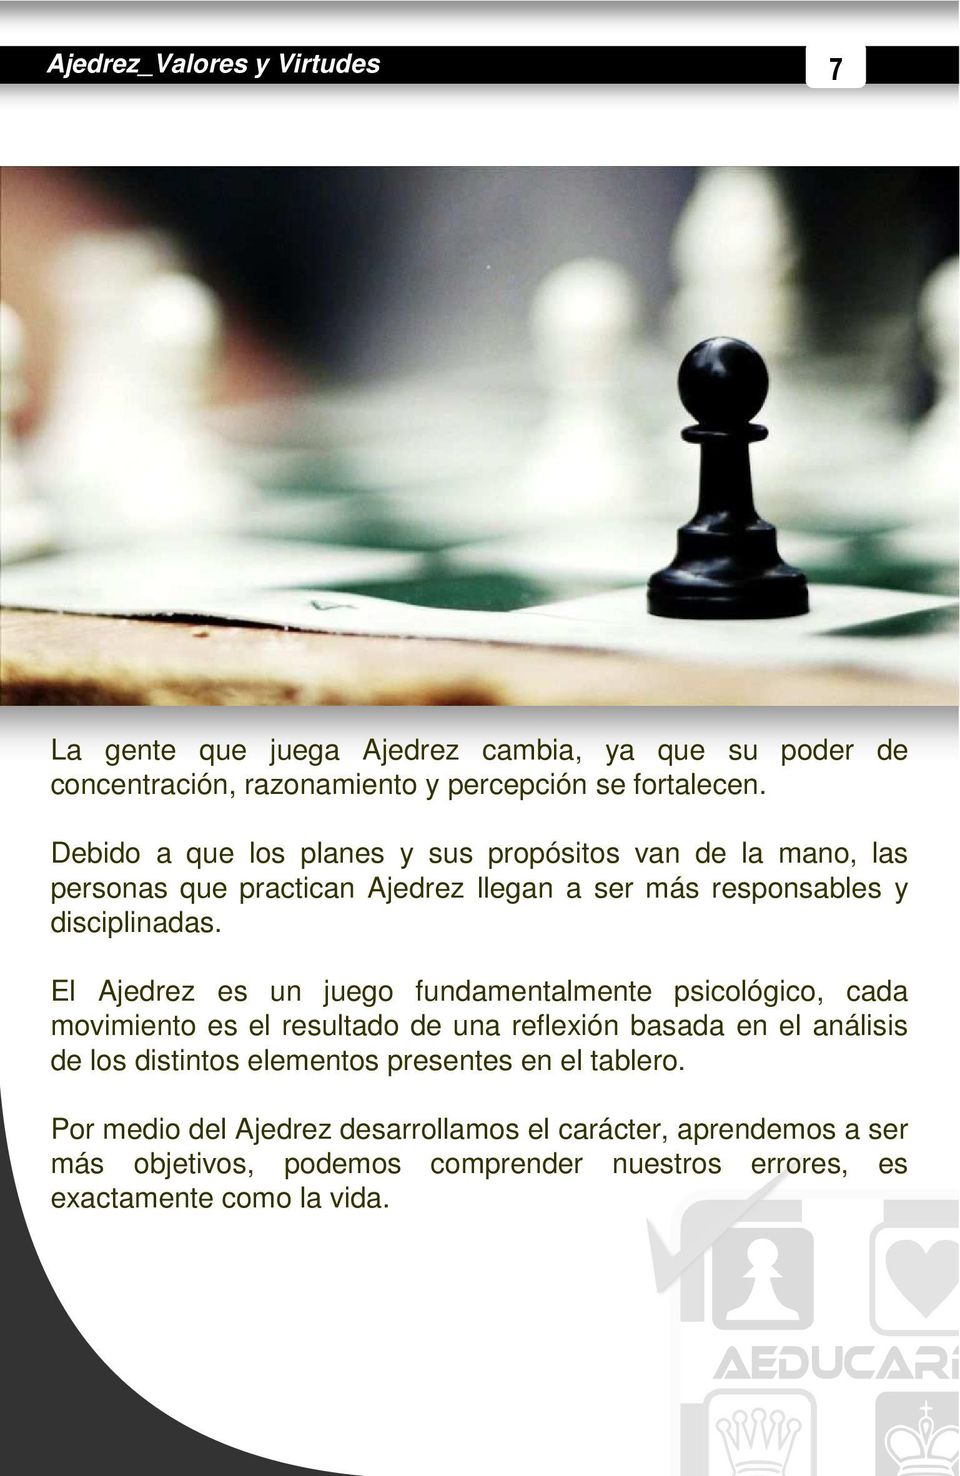 El Ajedrez es un juego fundamentalmente psicológico, cada movimiento es el resultado de una reflexión basada en el análisis de los distintos